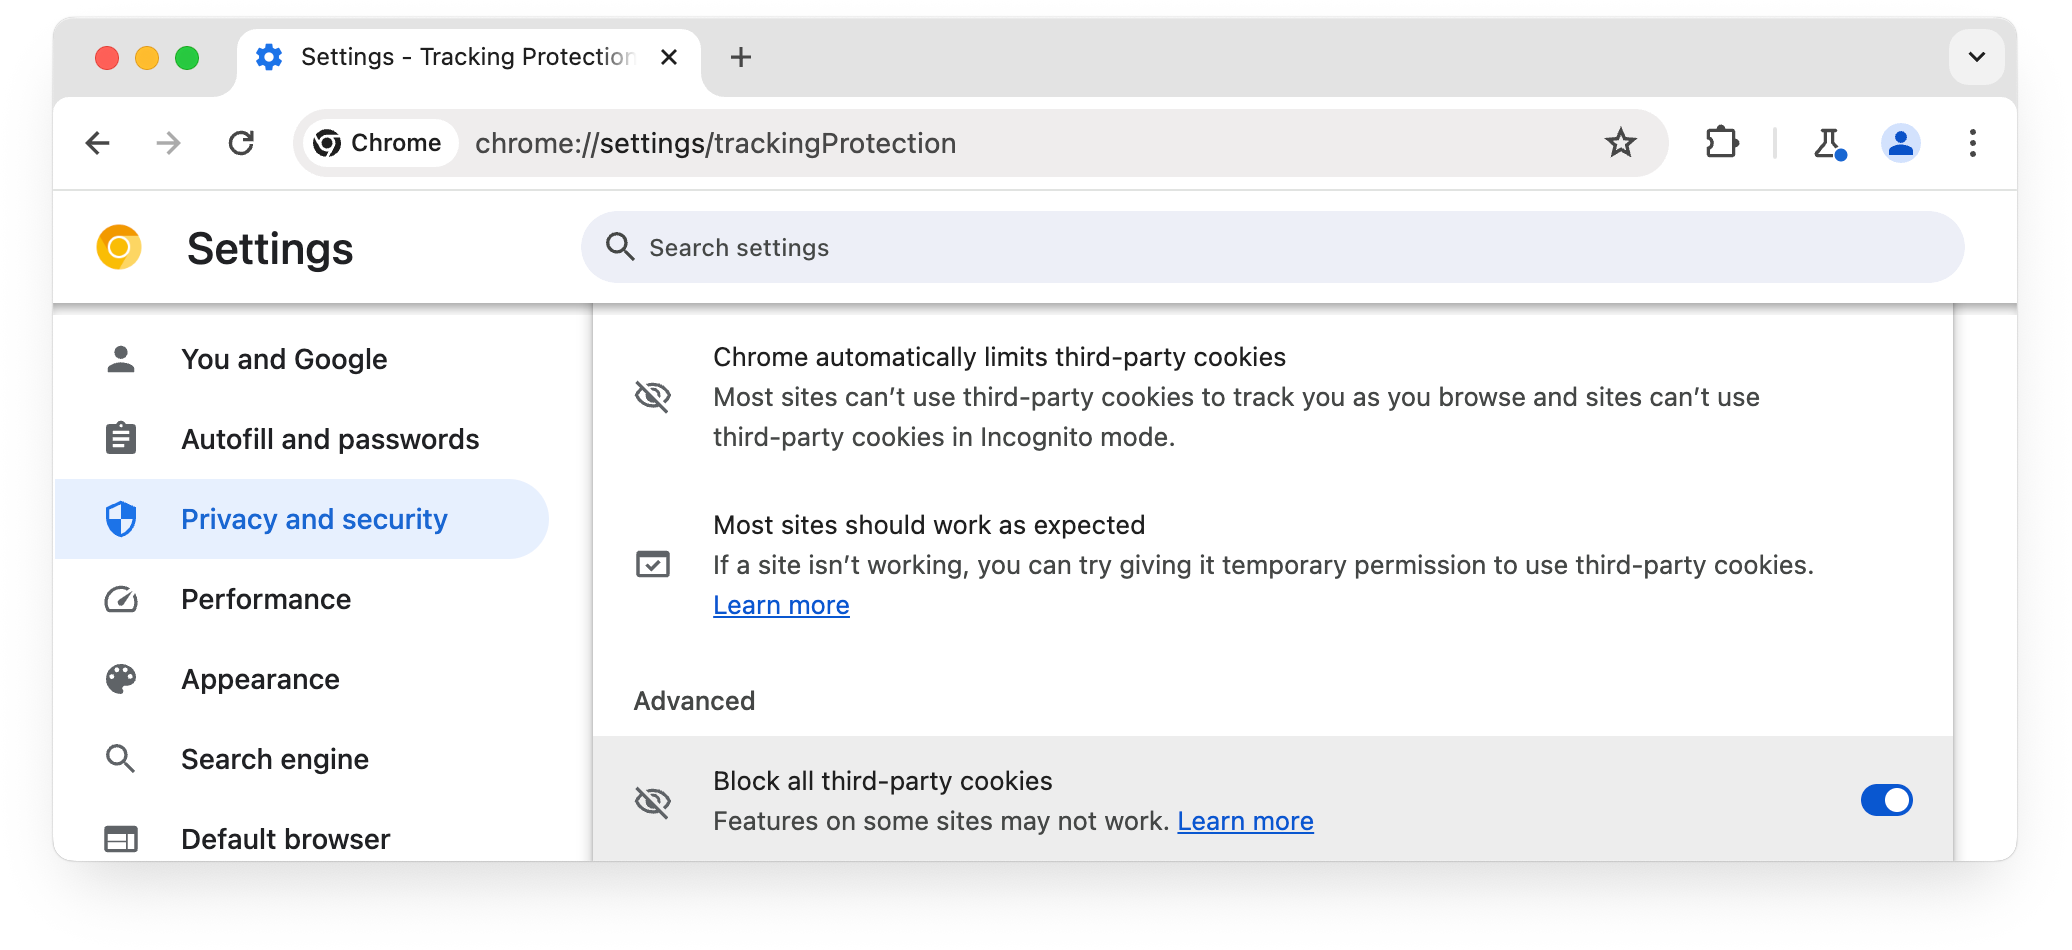 halaman chrome://settings/trackingProtection, blokir semua cookie pihak ketiga yang dipilih